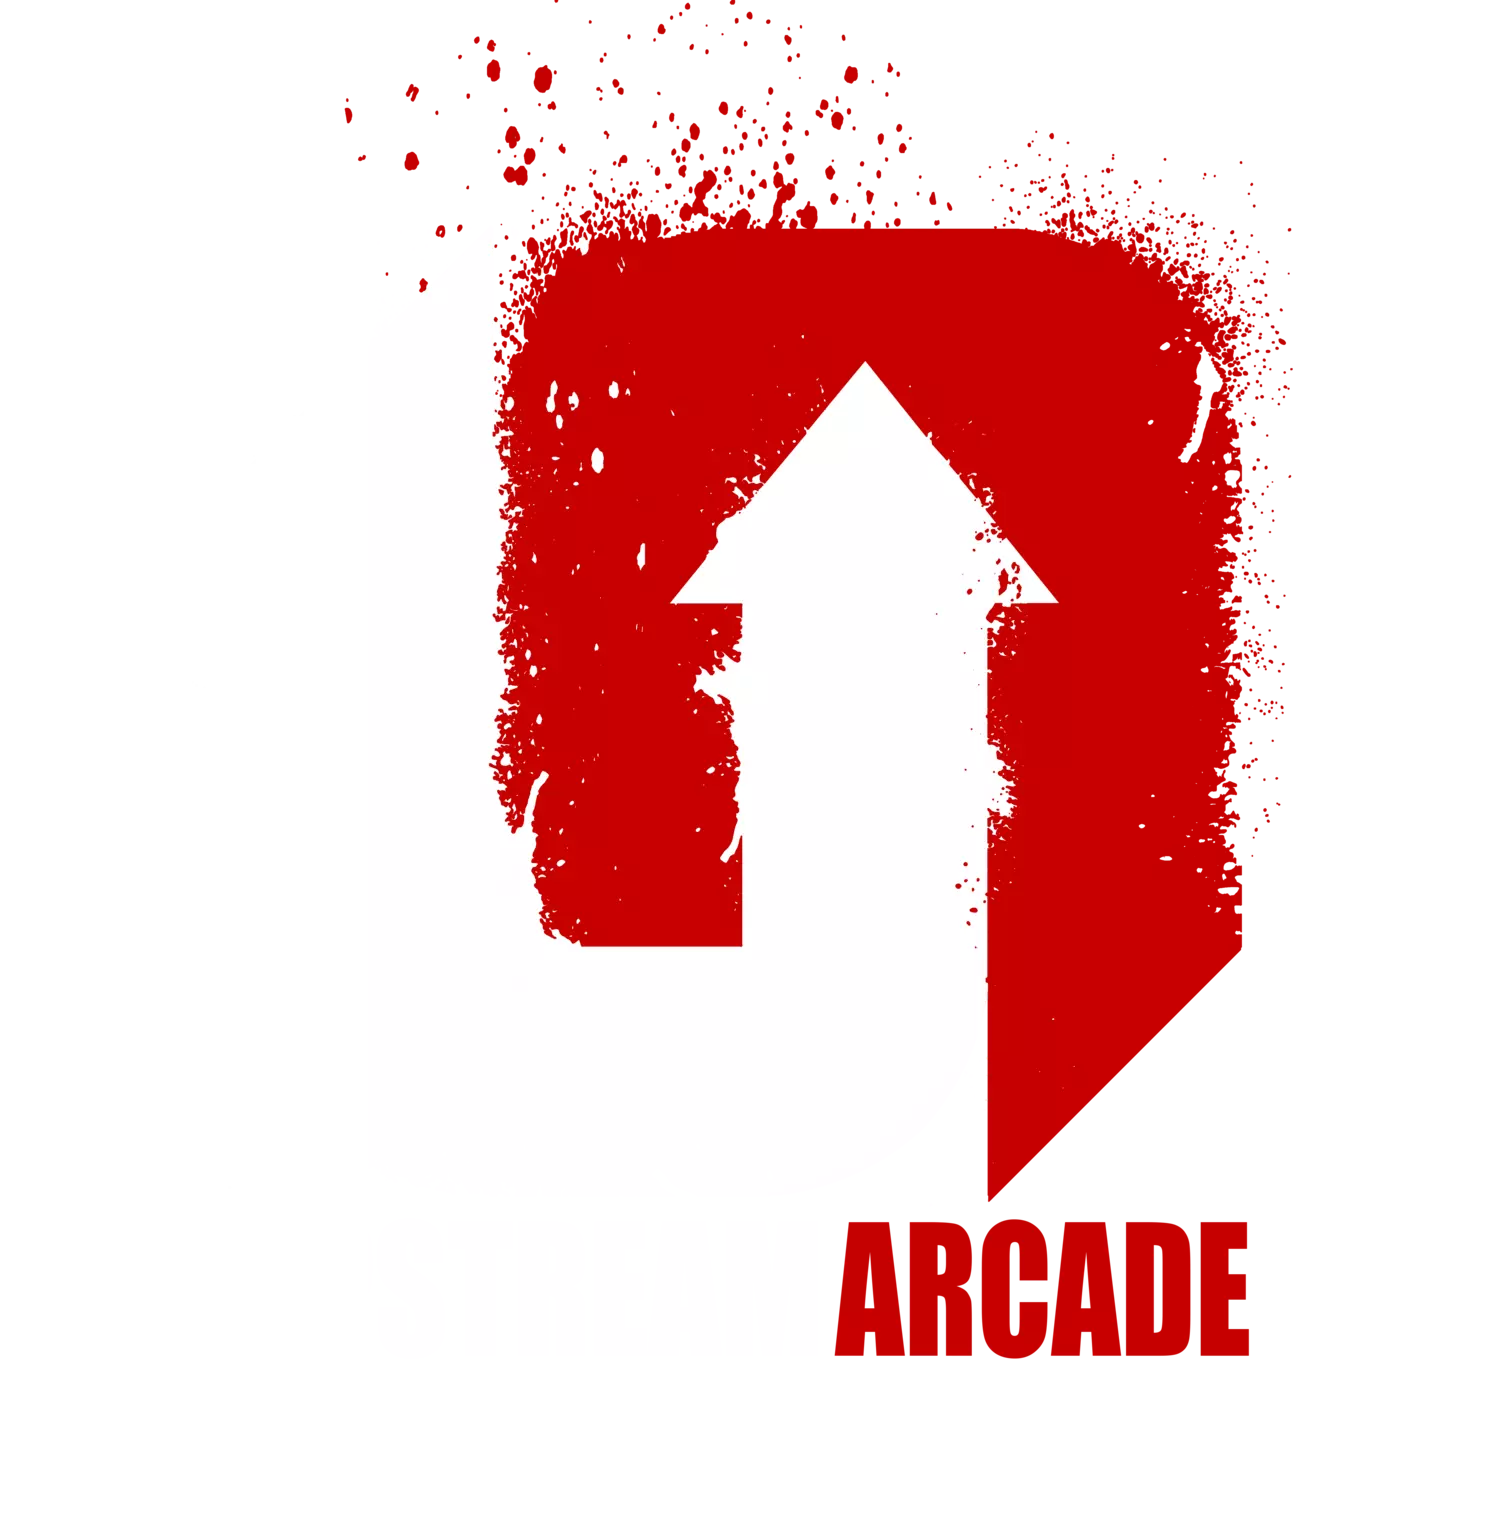 Upstream Arcade - независимый разработчик игр, базирующийся в Великобритании и основанный двумя ветеранами индустрии Ex-Lionhead; Адам Лэнгридж и Имкан Хаяти.